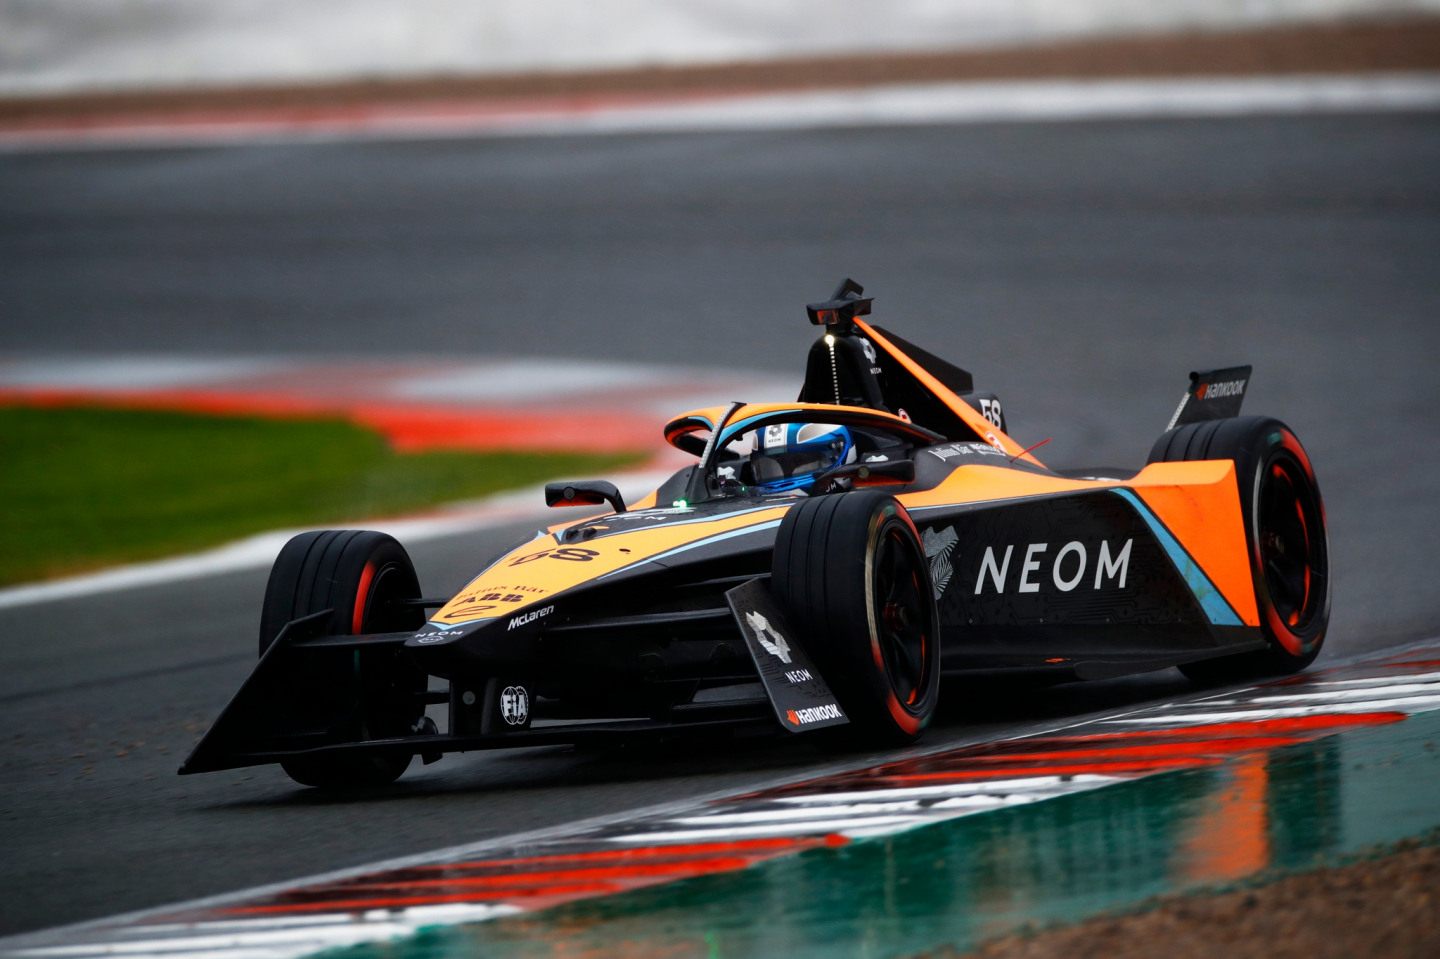 McLaren теперь представлен в двух чемпионатах мира по автогонкам © LAT Images/Formula E